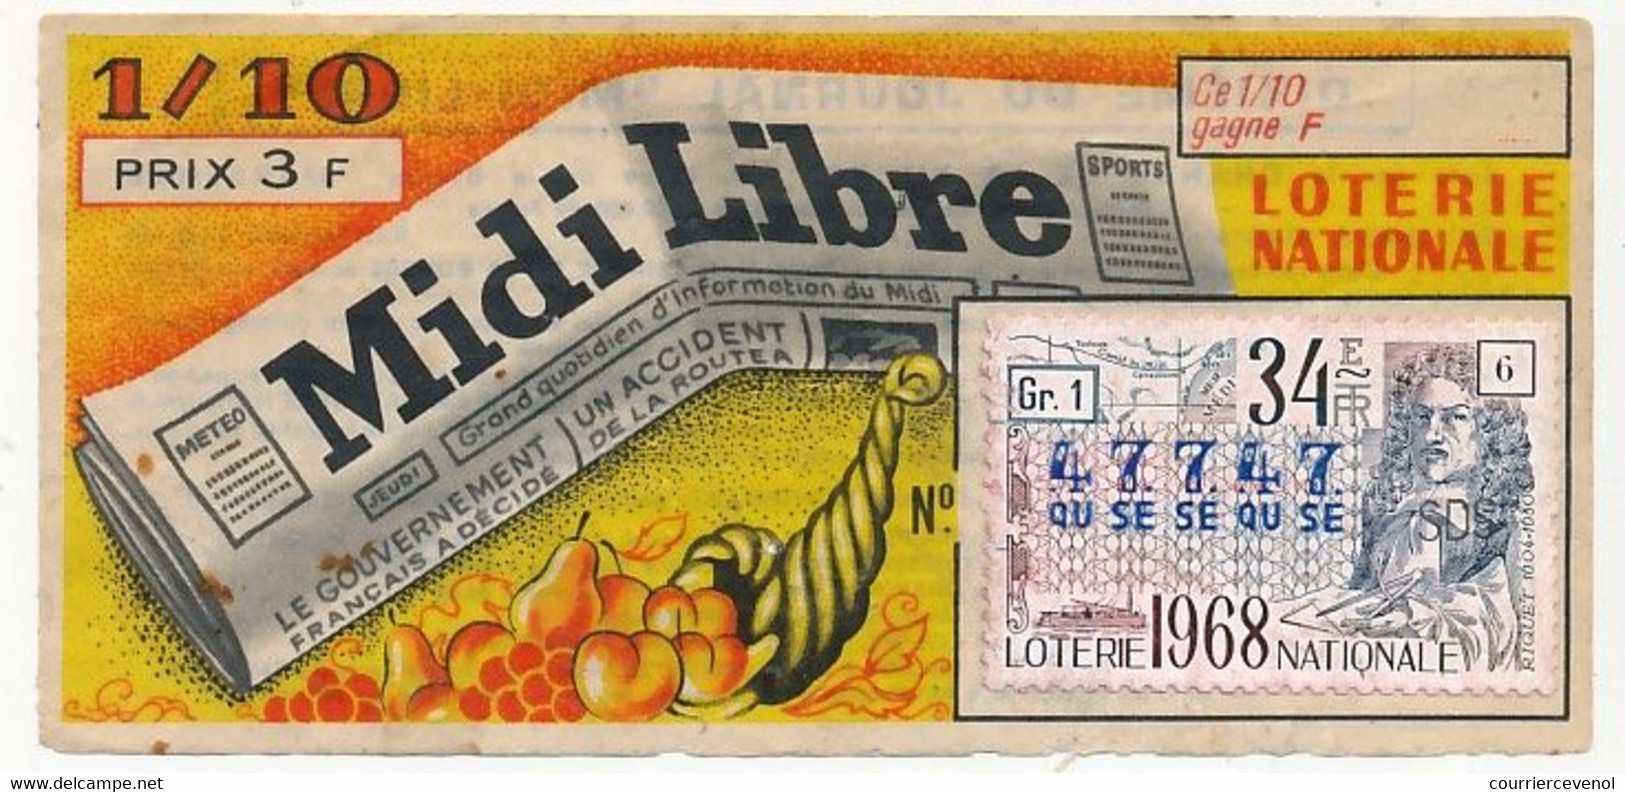 FRANCE - Loterie Nationale - 1/10ème - MIDI LIBRE - 34eme Tranche 1968 - Billets De Loterie